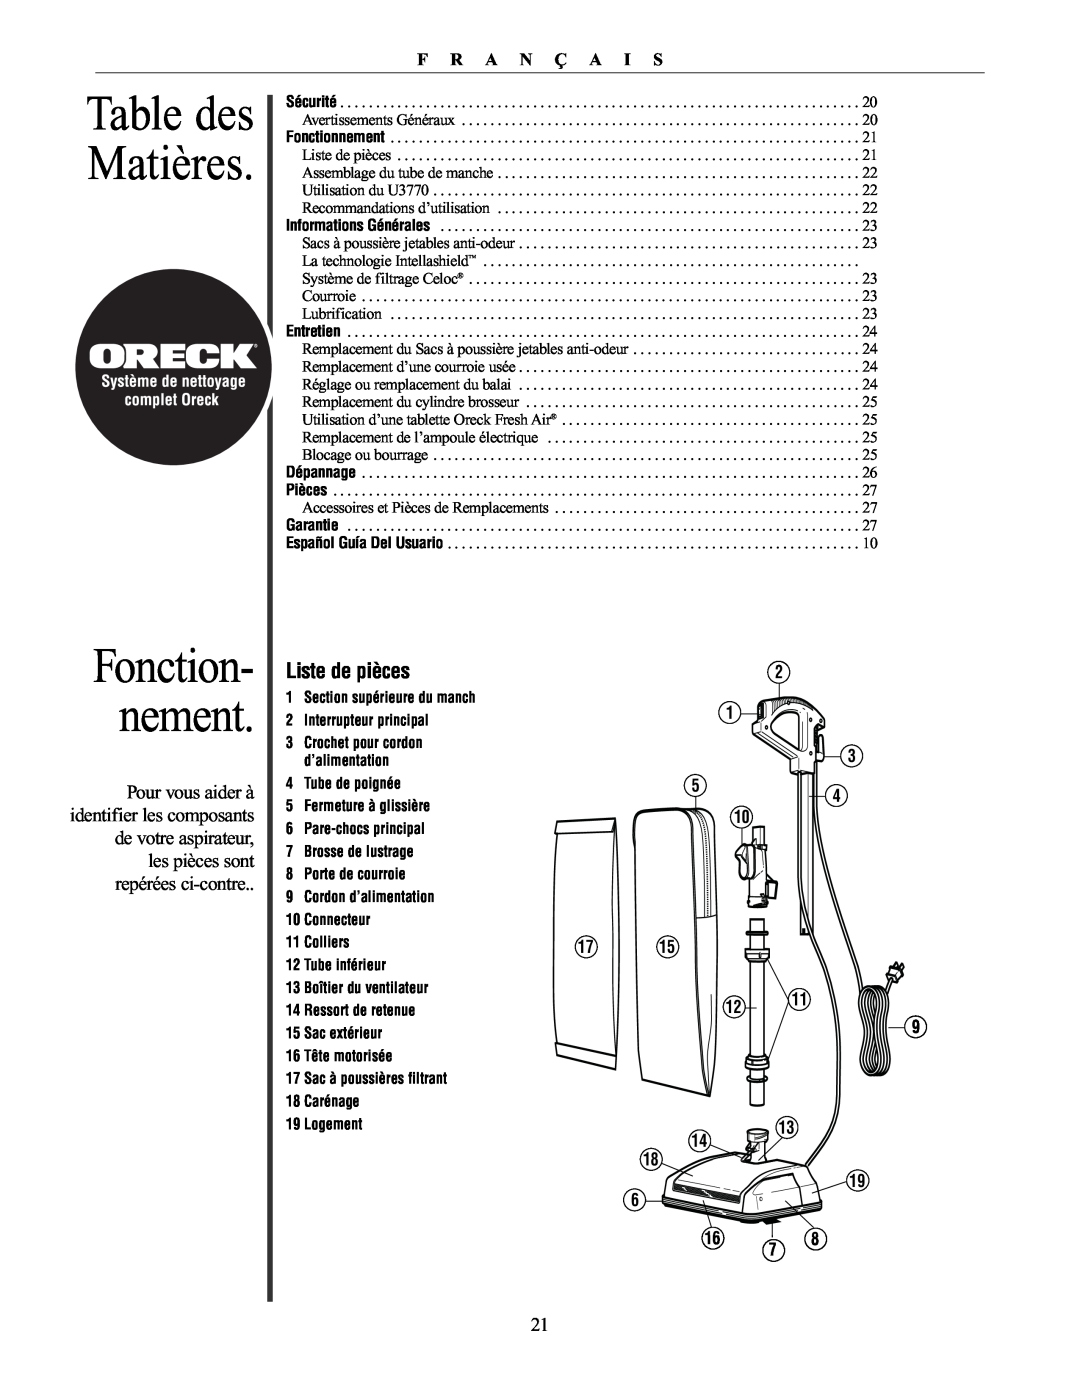 Oreck 76011-01REVC manual Table des Matières, Fonction- nement, Liste de pièces, F R A N Ç A I S 